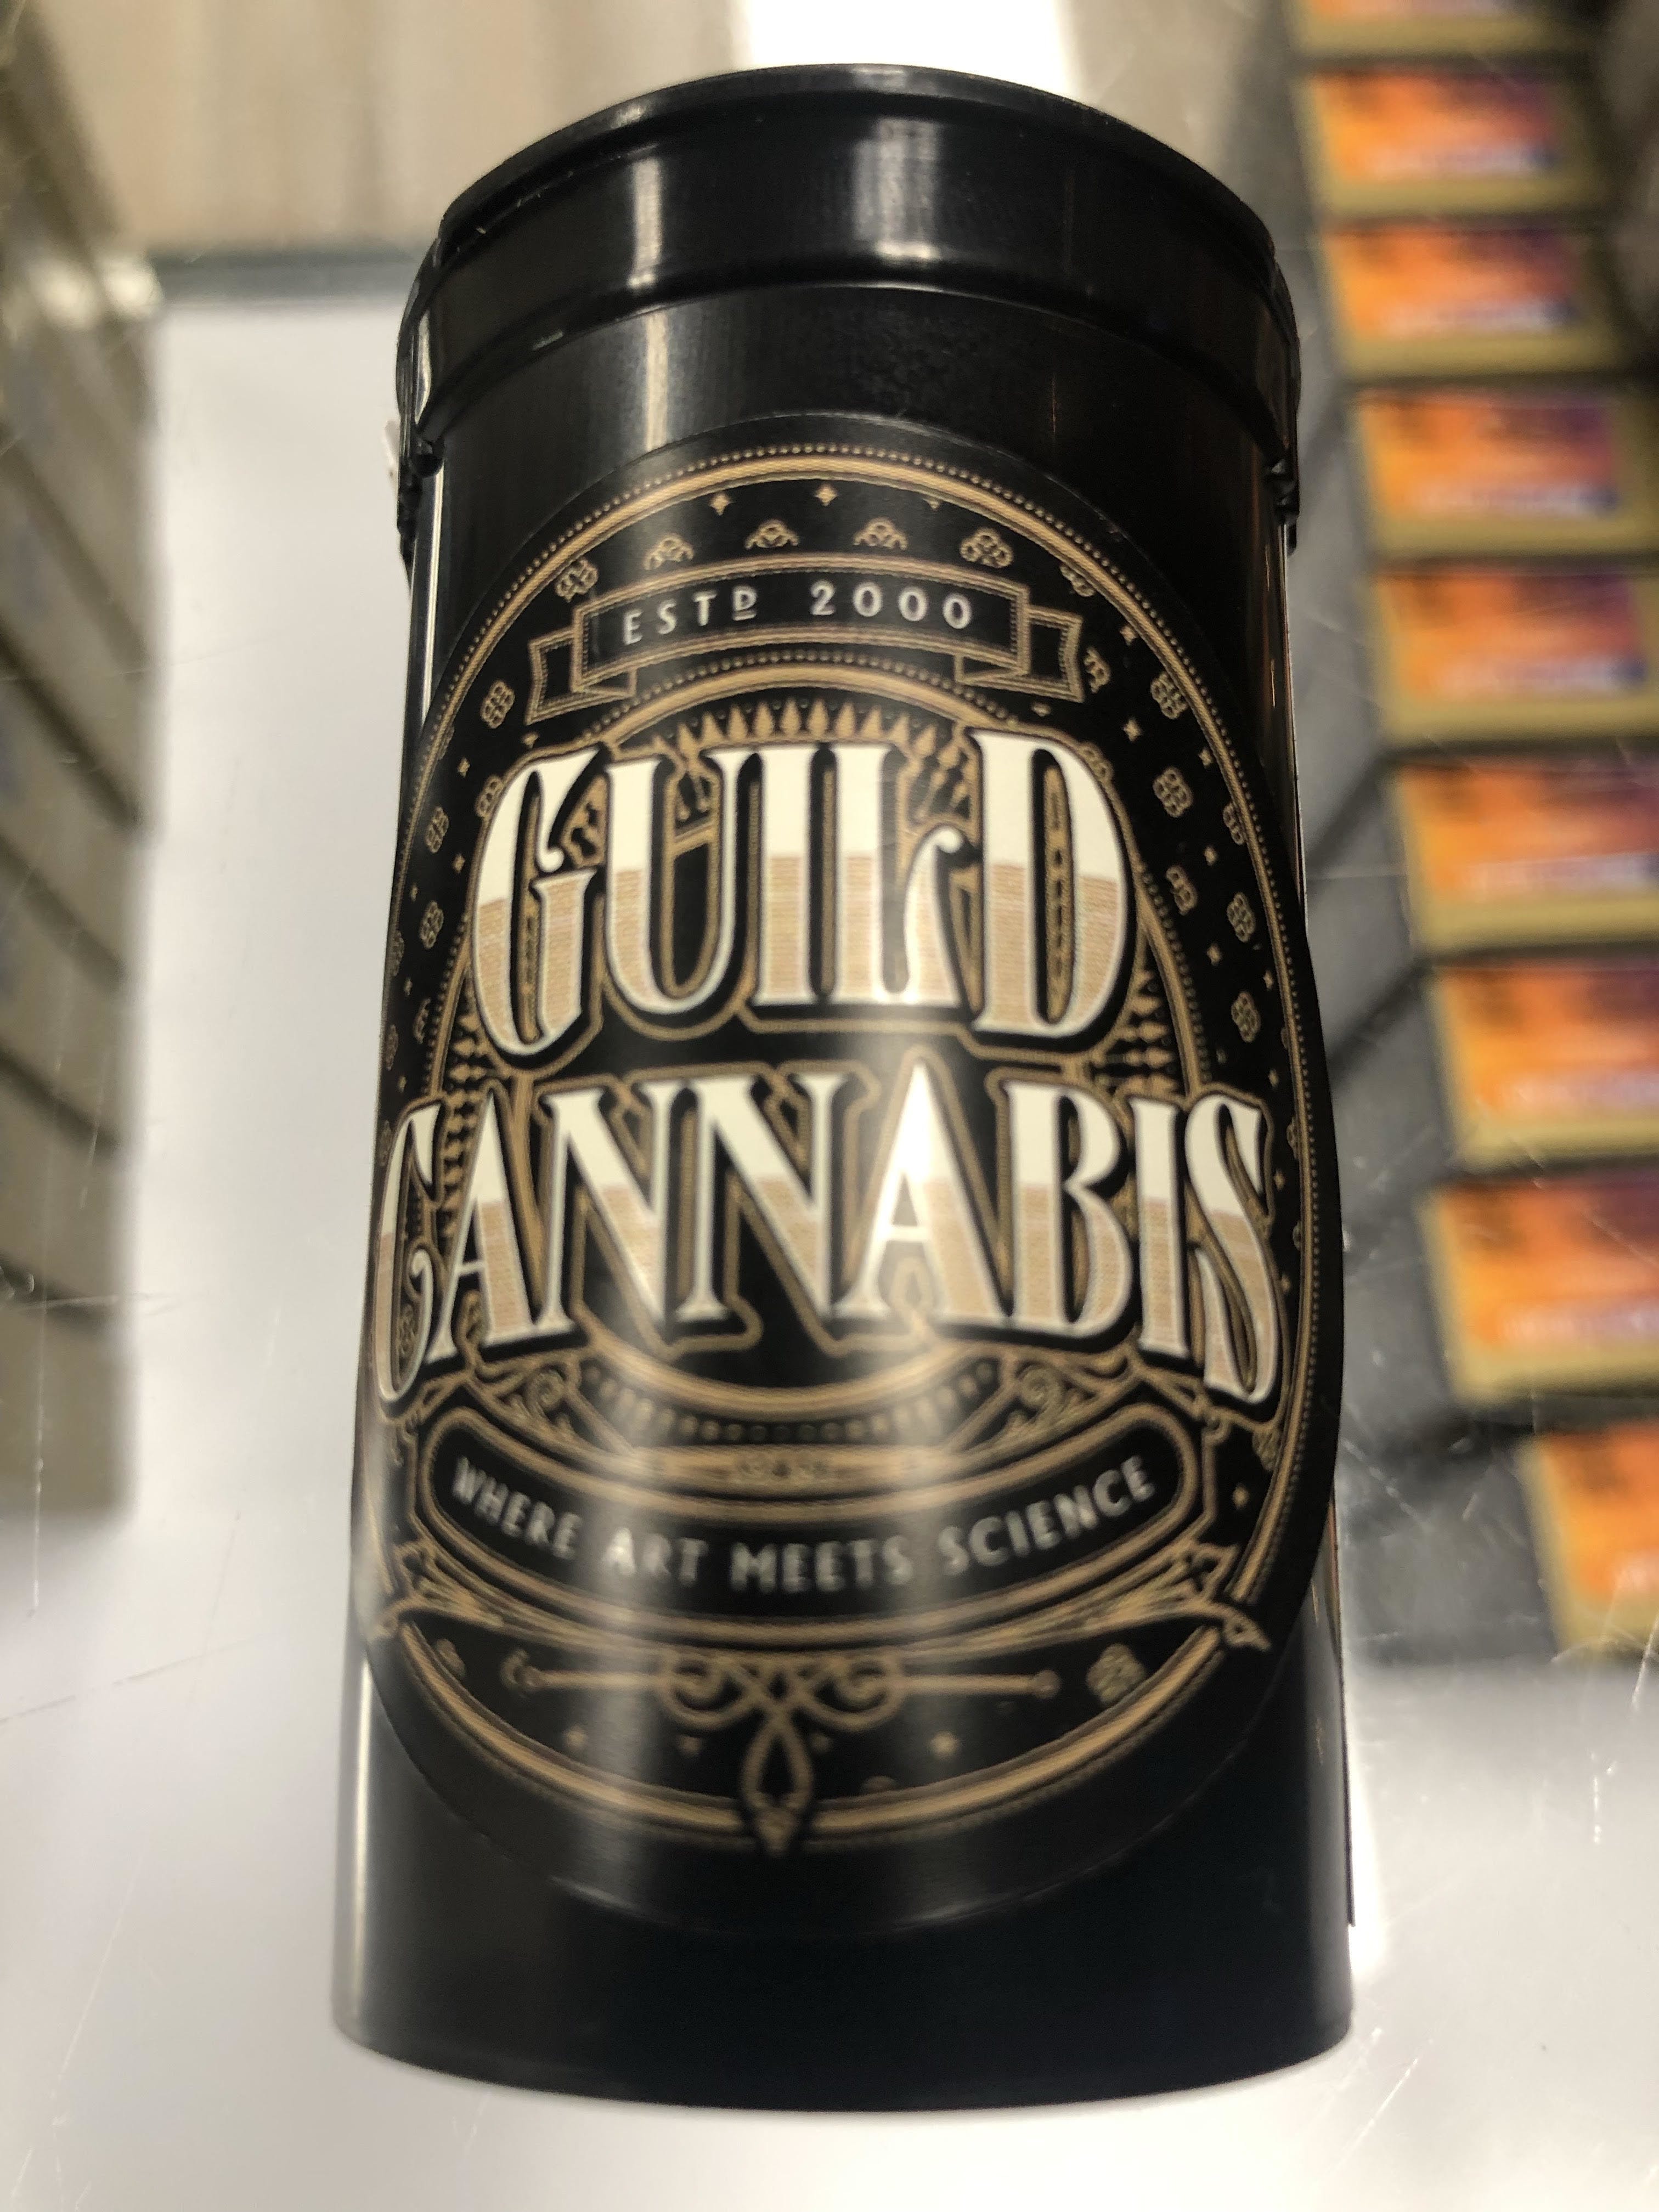 Guild Cannabis - Dream Queen